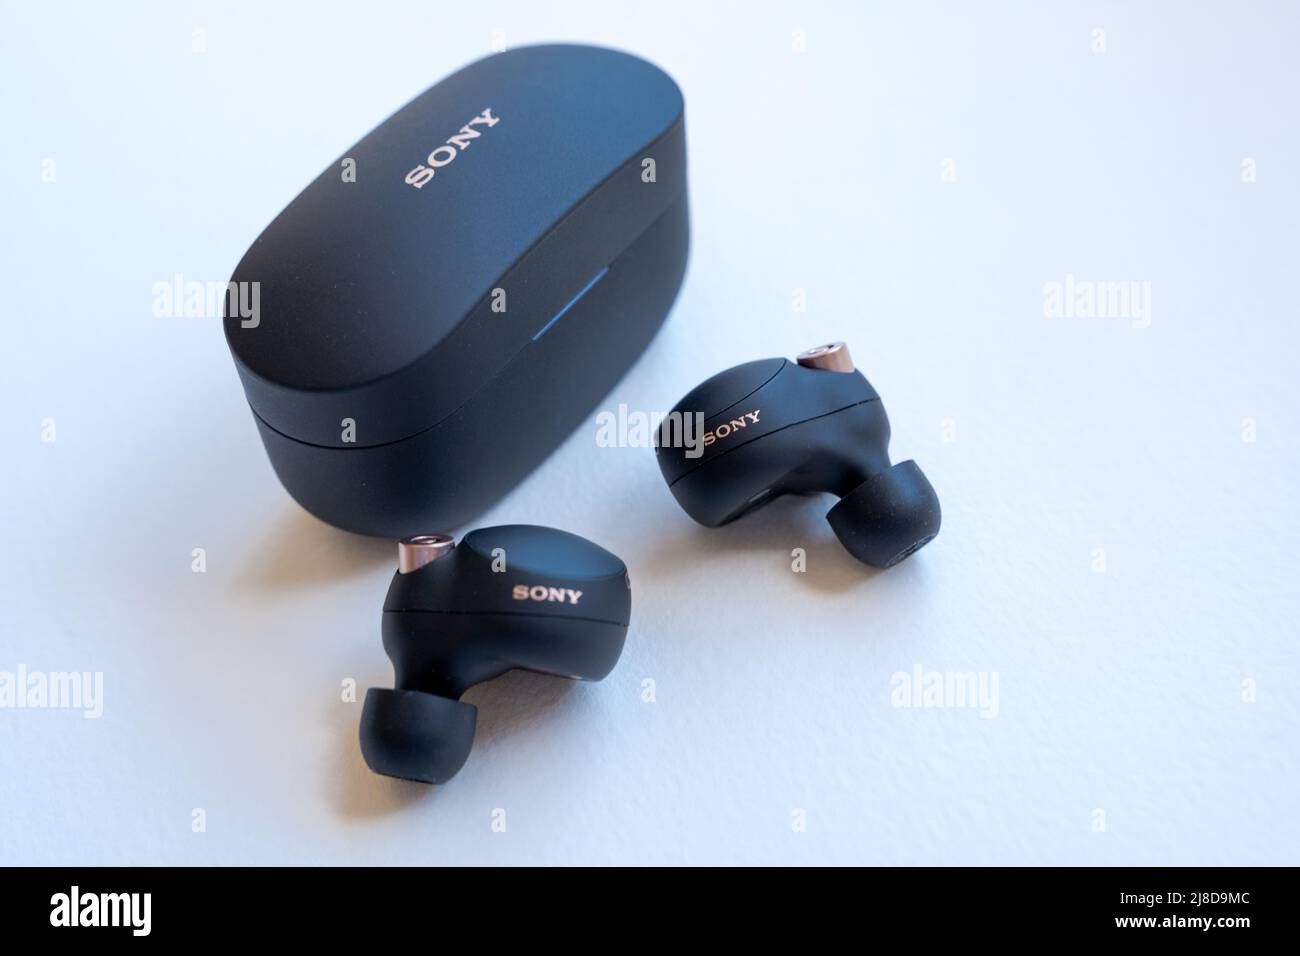 Sony WF-1000XM4 Noise Canceling True Wireless Earbuds